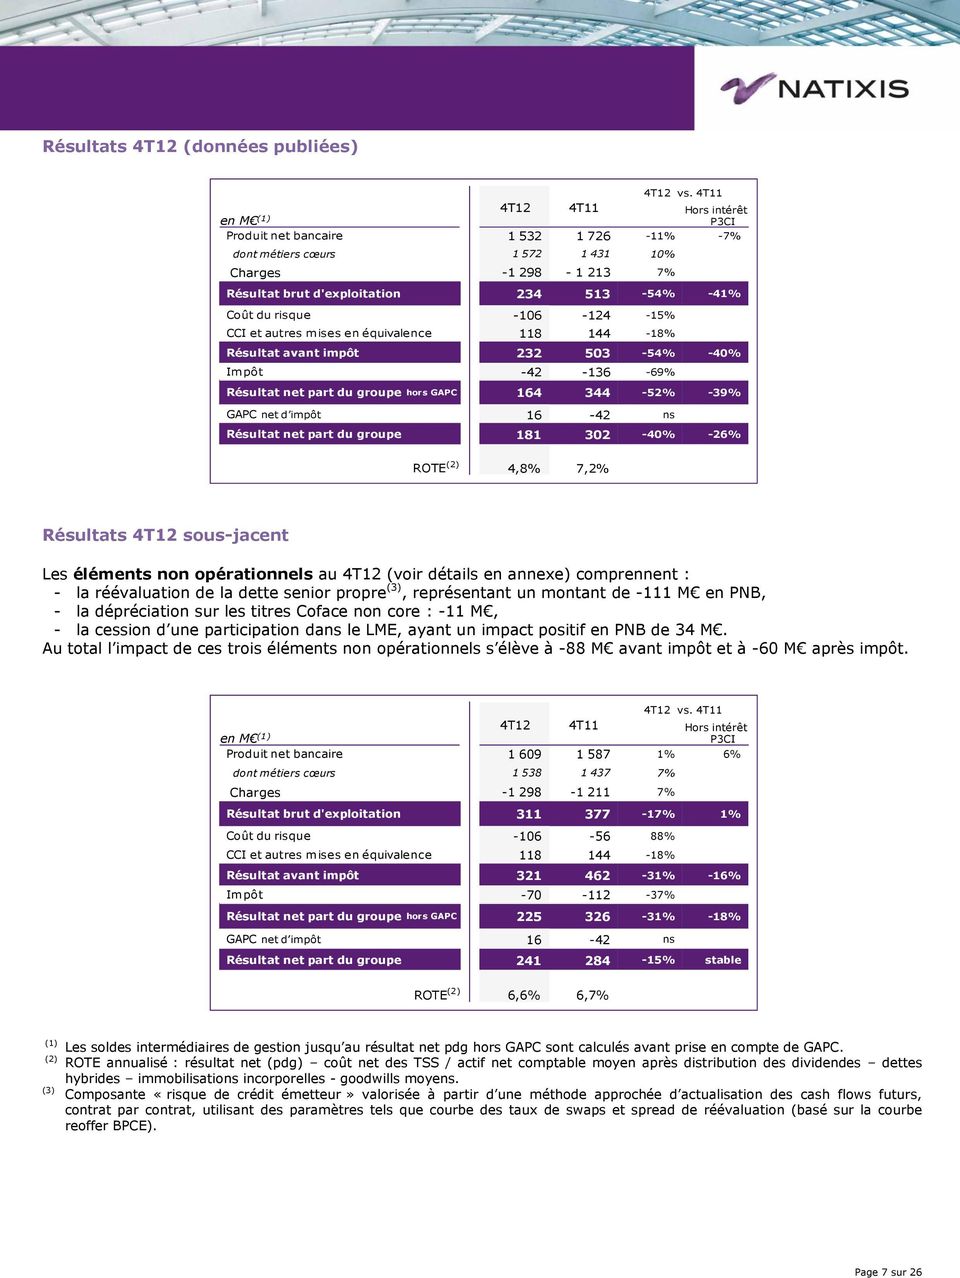 -39% GAPC net d impôt 16-42 ns Résultat net part du groupe 181 302-40% -26% ROTE (2) 4,8% 7,2% Résultats 4T12 sous-jacent Les éléments non opérationnels au 4T12 (voir détails en annexe) comprennent :